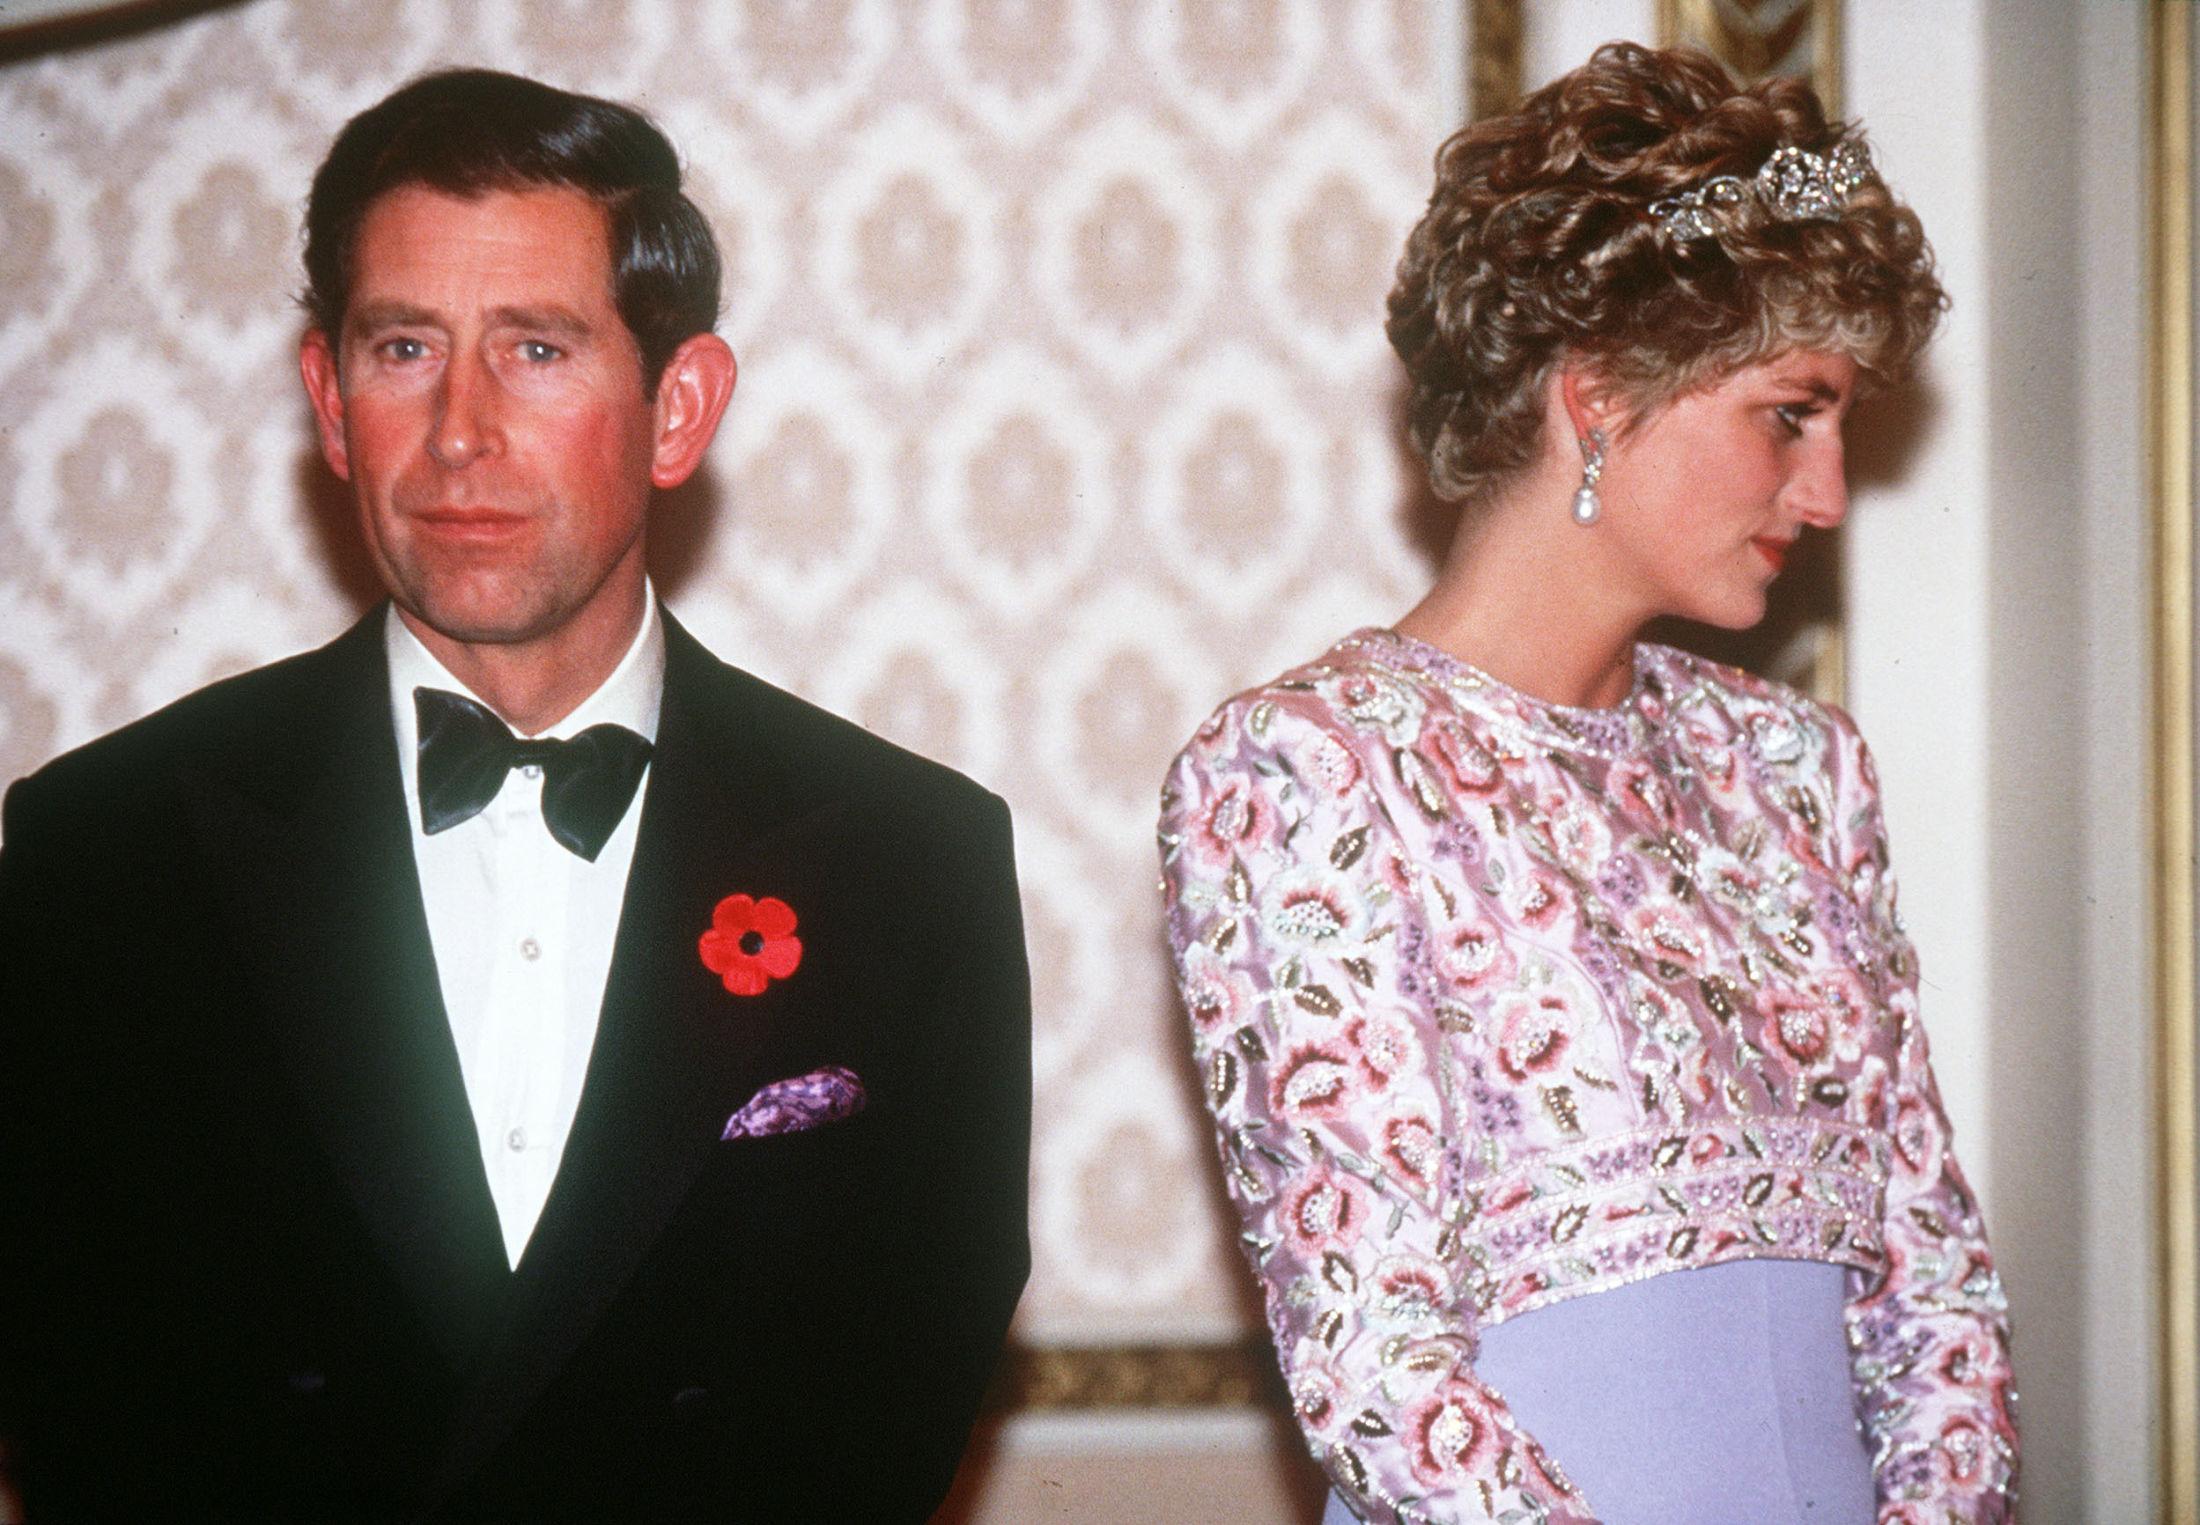 SISTE OPPDRAGSAMMEN: Her er prins Charles og Diana i Korea i 1992. Legg merke til at Charles' tørkle matcher Dianas kjole. Dette var deres siste offisielle reise sammen. Foto: PA Photos.